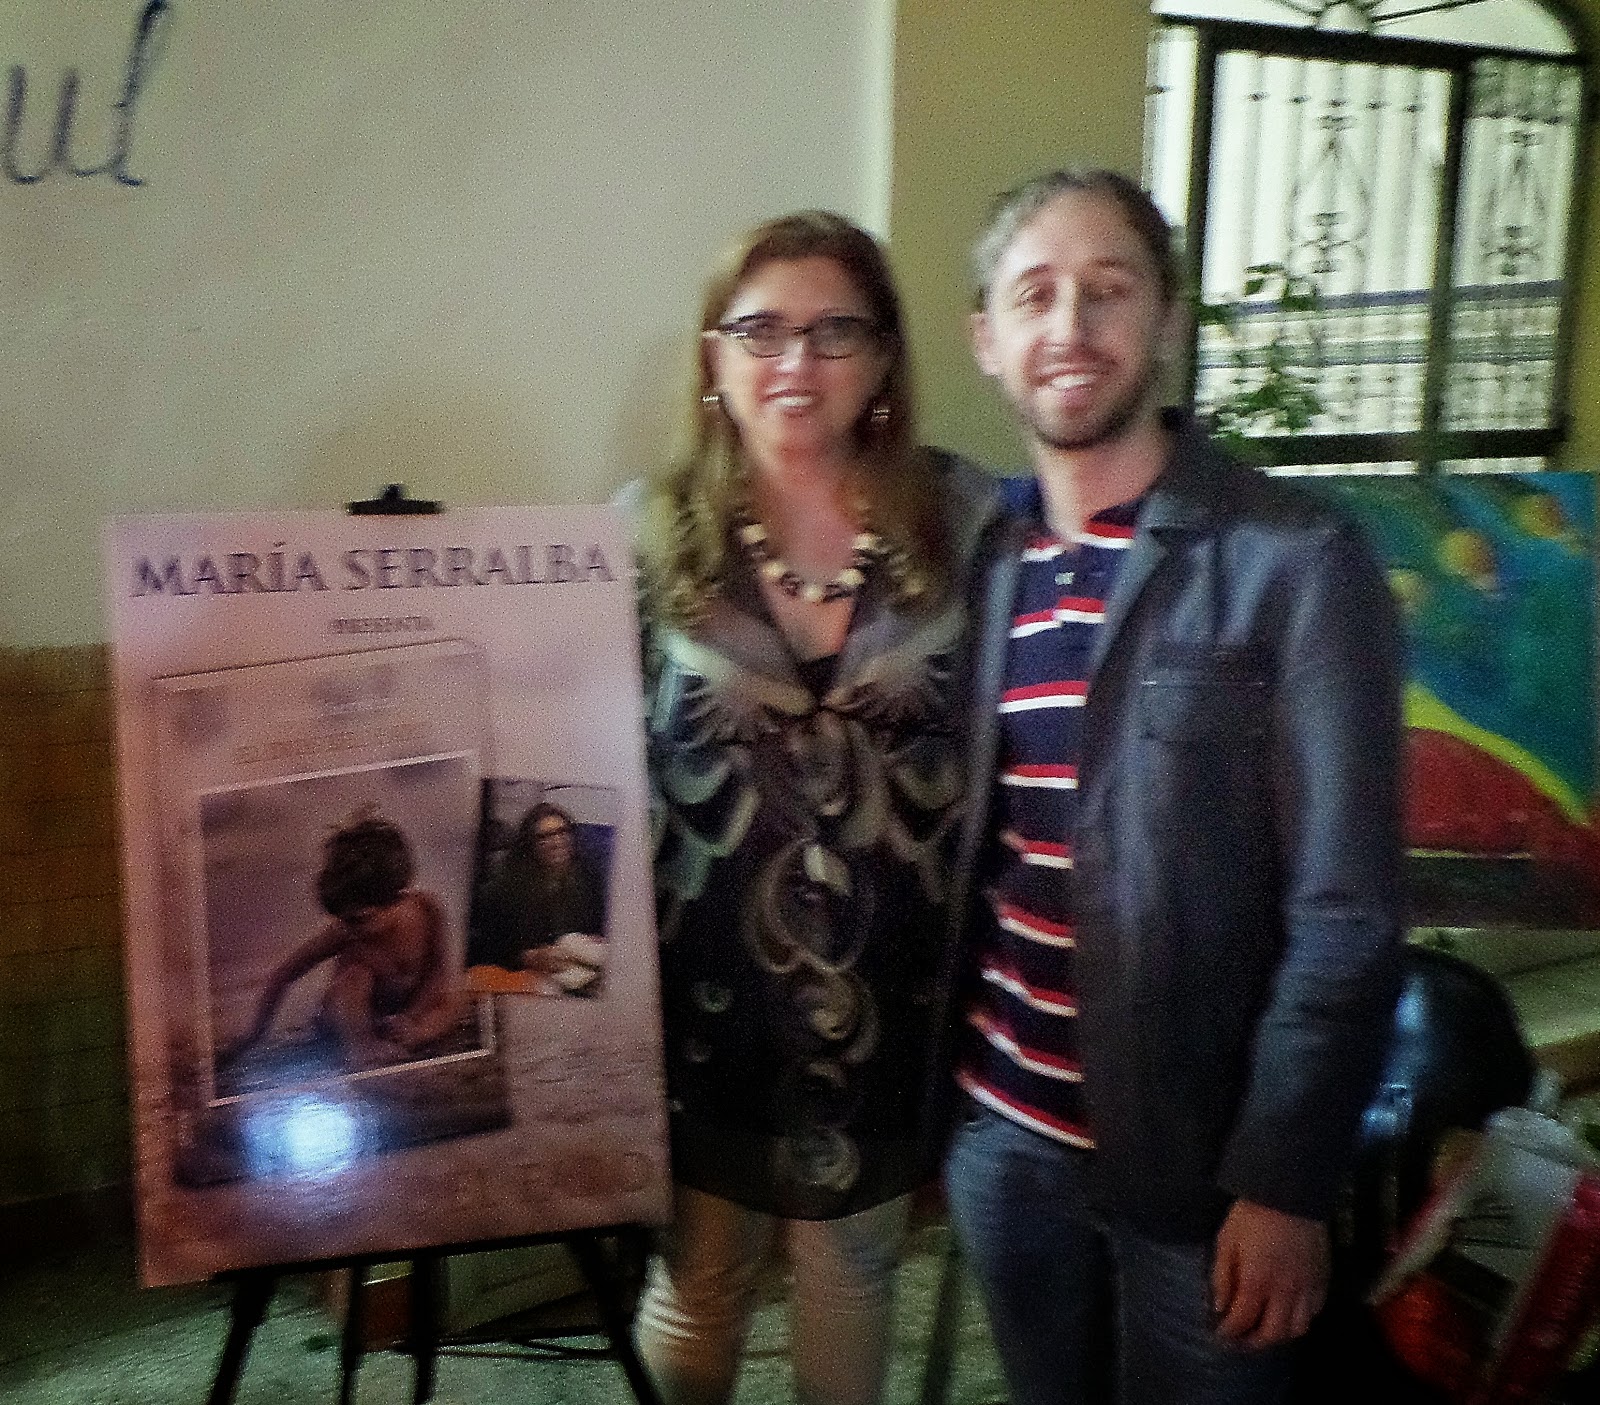 El Blog de María Serralba - Presentación Fuengirola 23/4/14